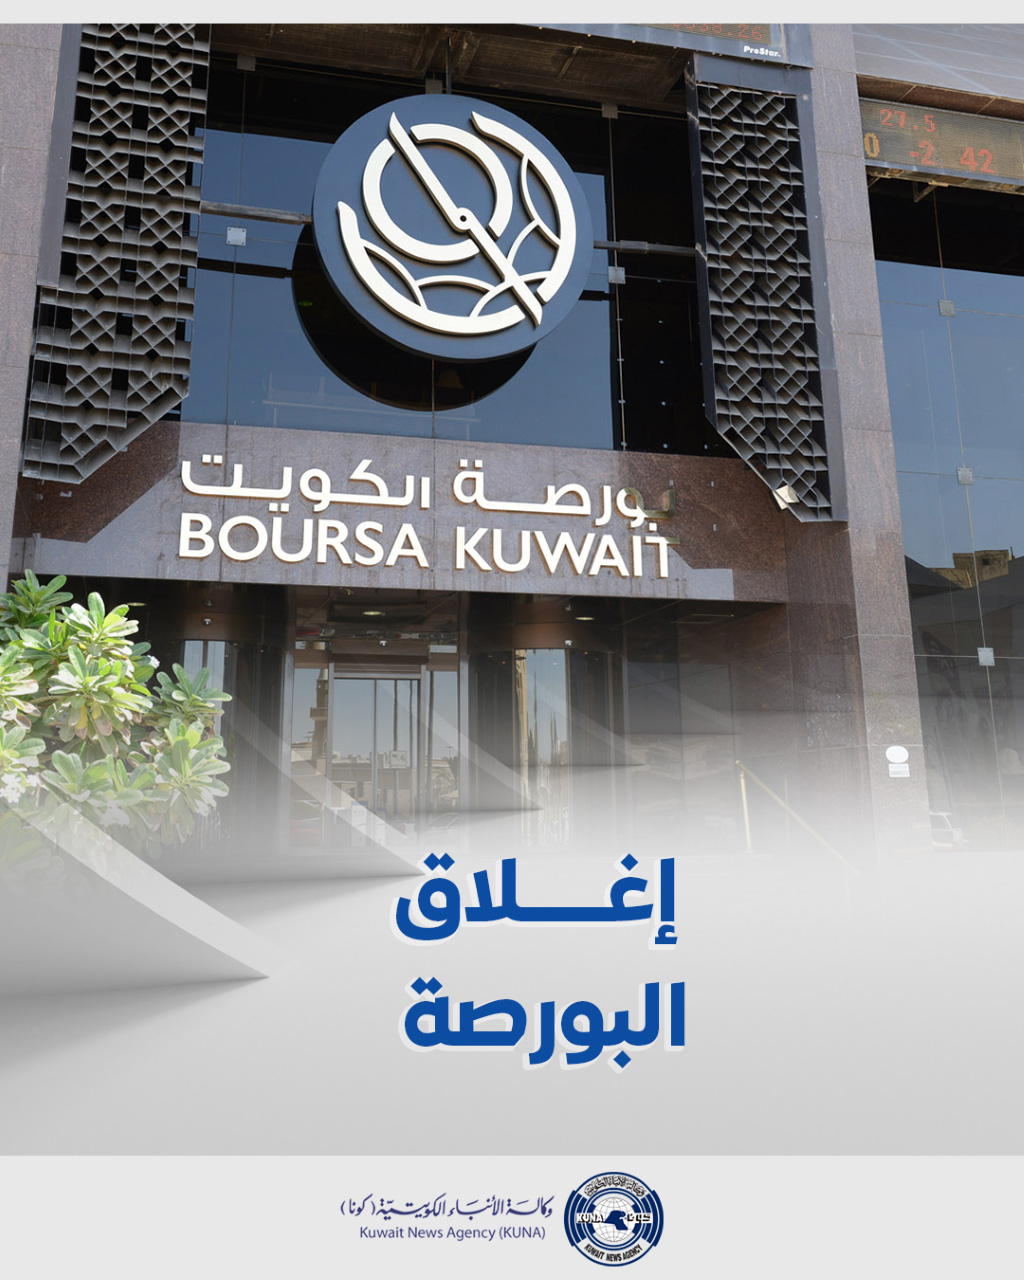 بورصة الكويت تغلق تعاملاتها على ارتفاع مؤشرها العام 18ر18 نقطة ليبلغ 09ر7358 بنسبة 25ر0 في المئة                                                                                                                                                          